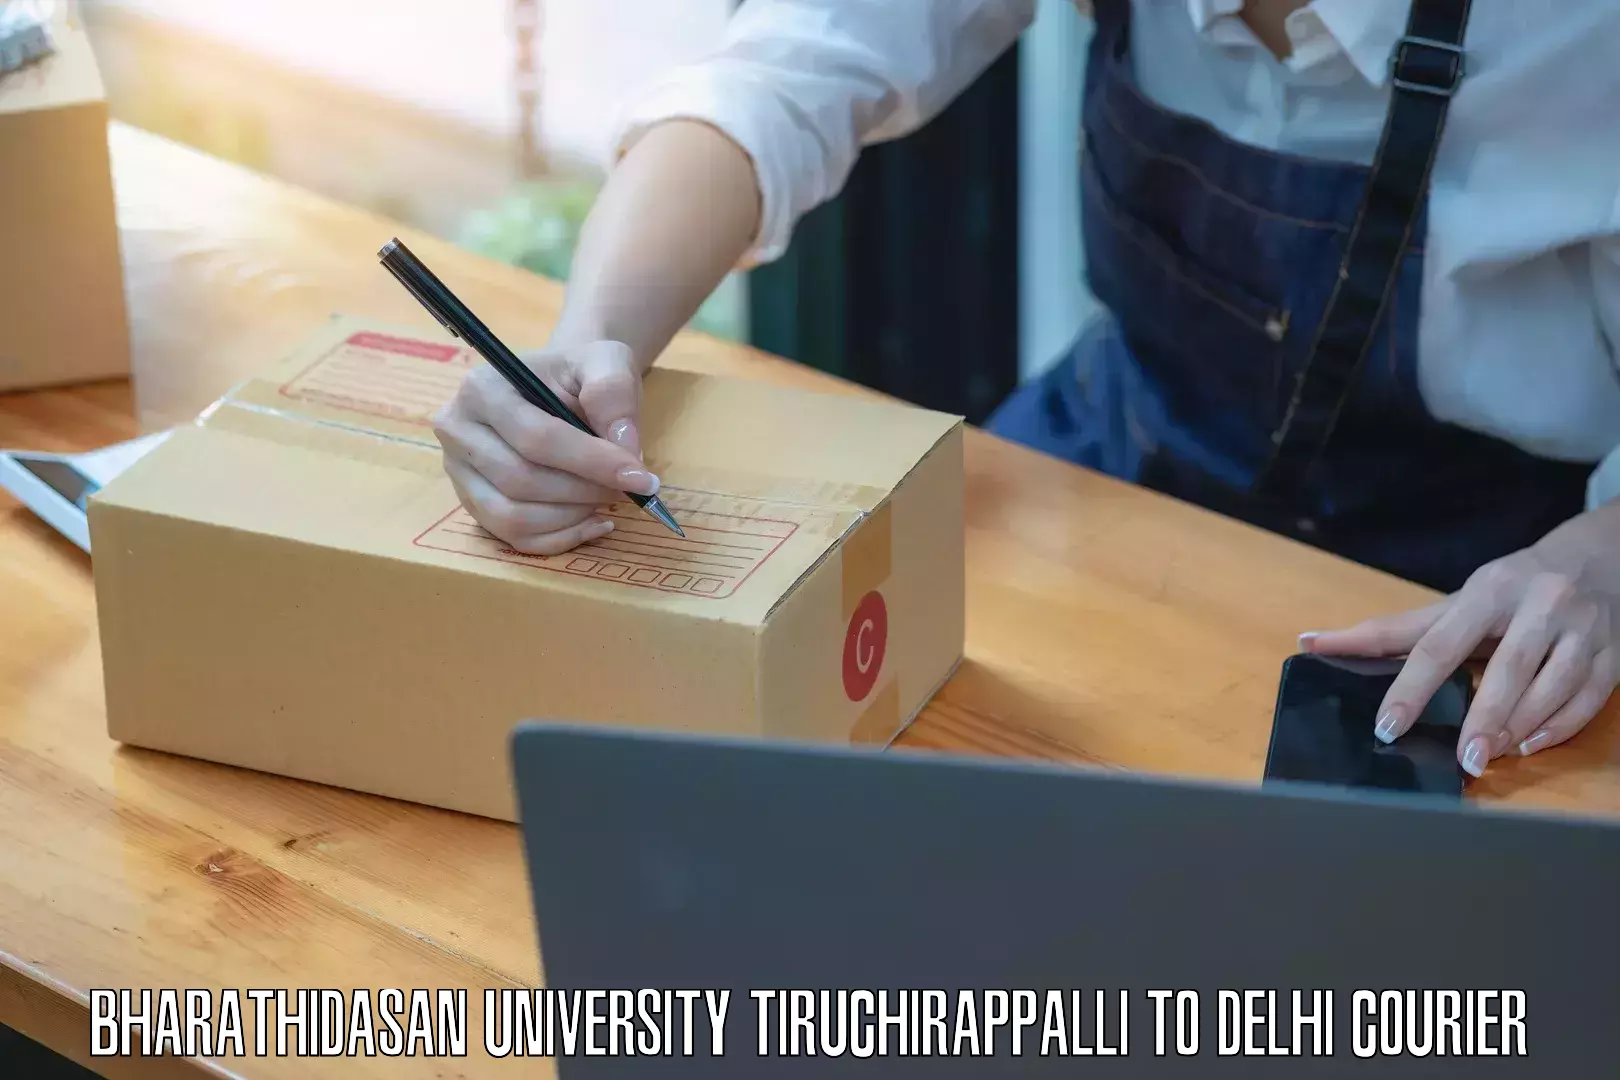 International courier networks Bharathidasan University Tiruchirappalli to IIT Delhi